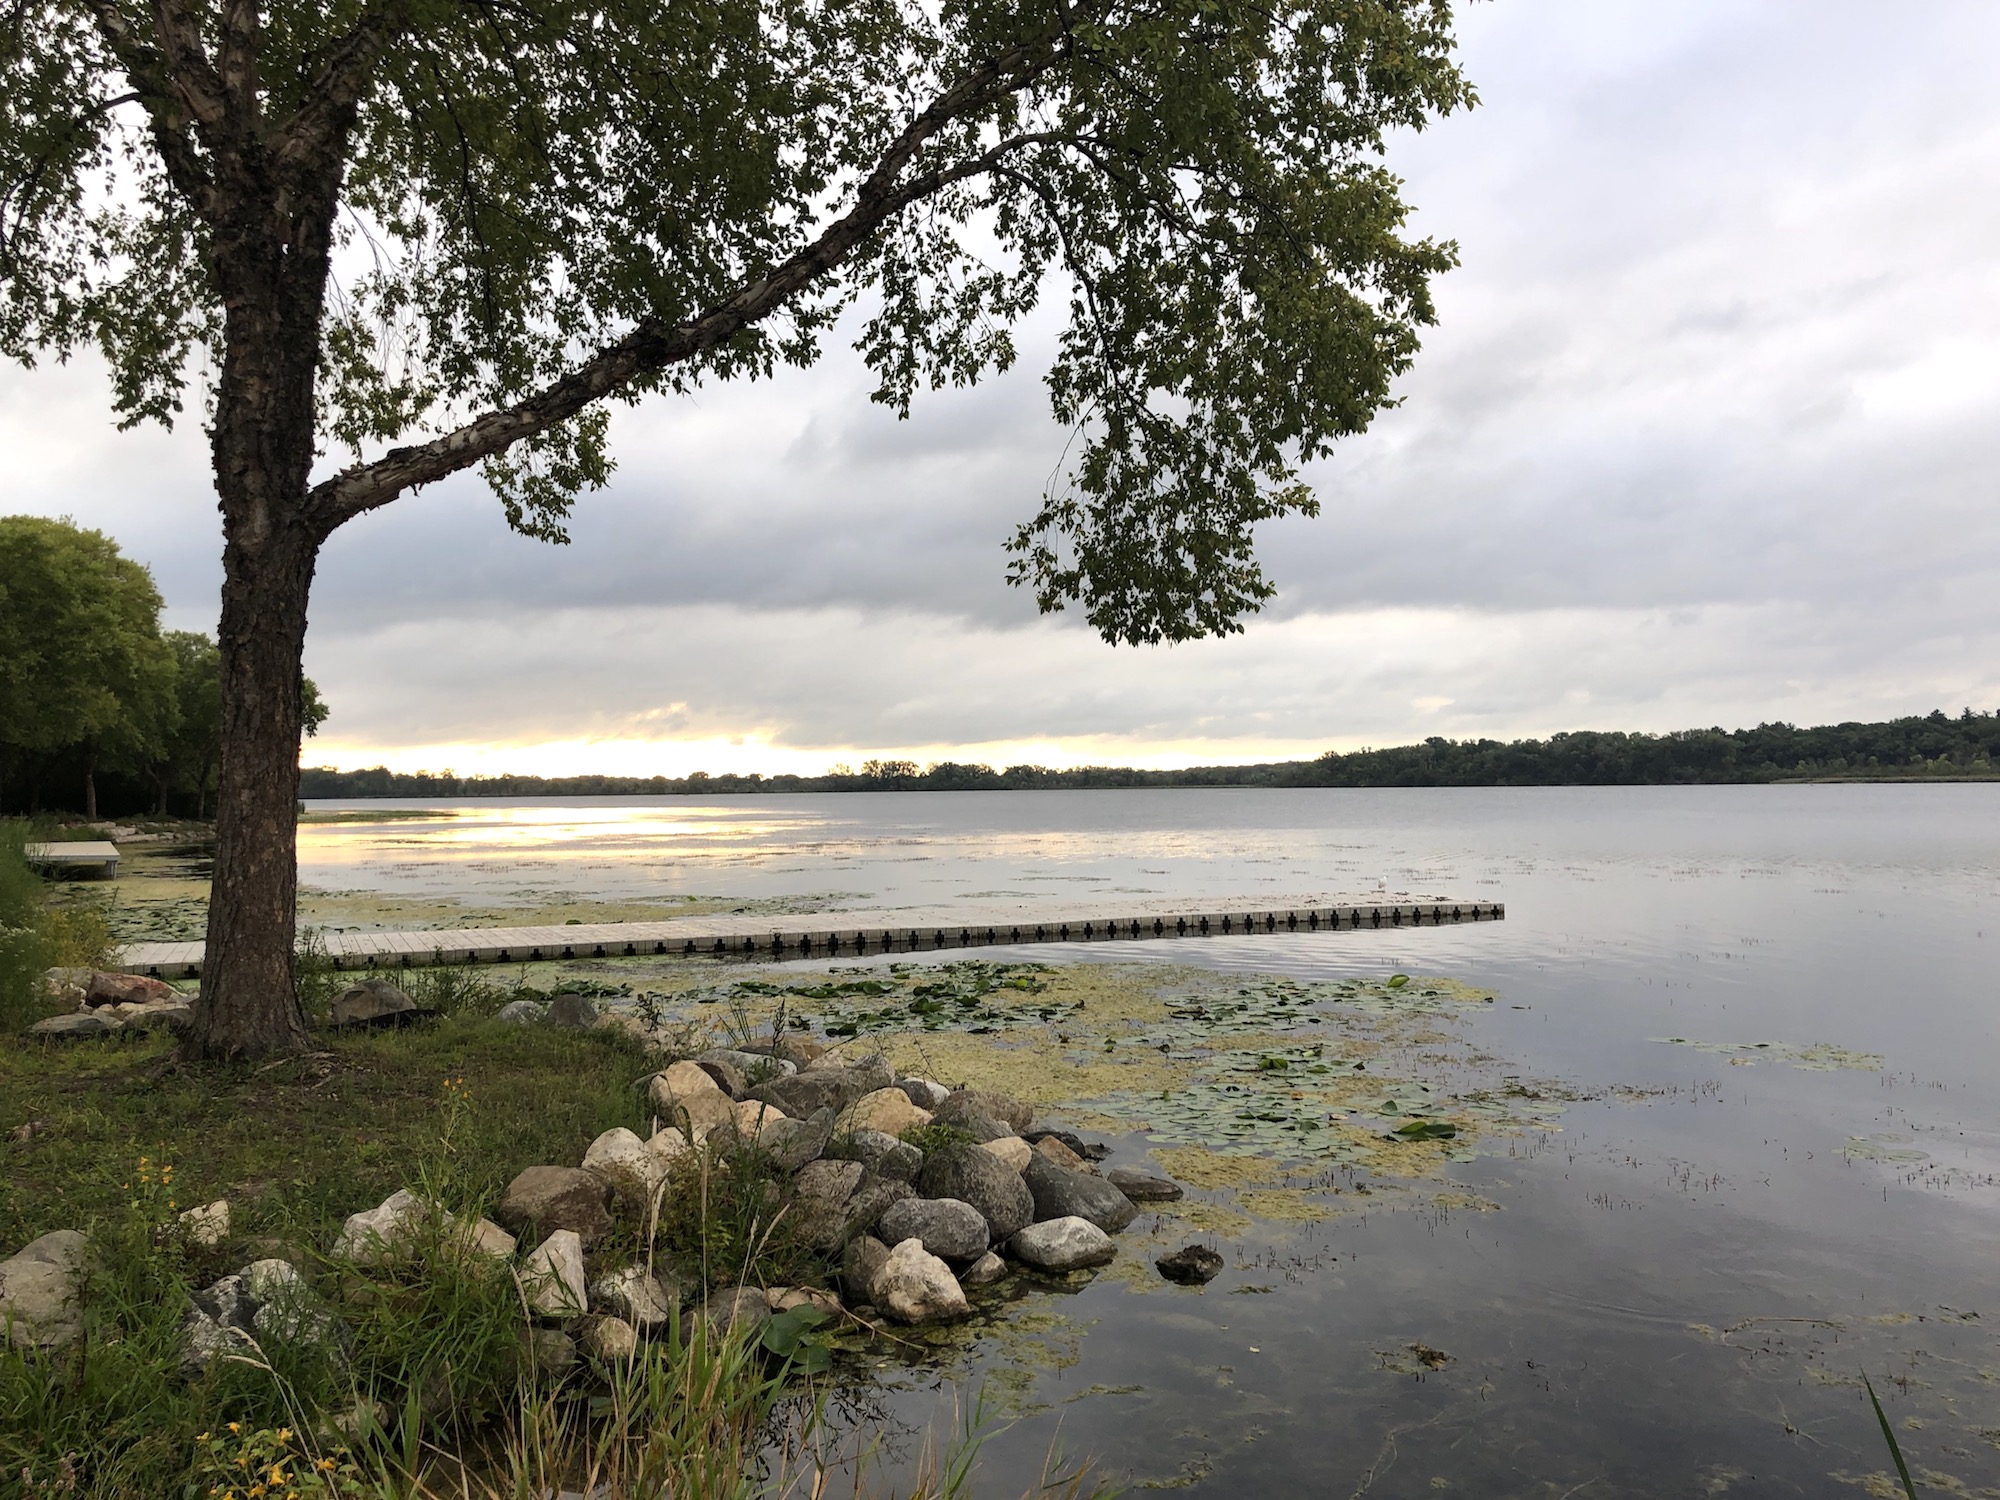 Lake Wingra on September 6, 2019.